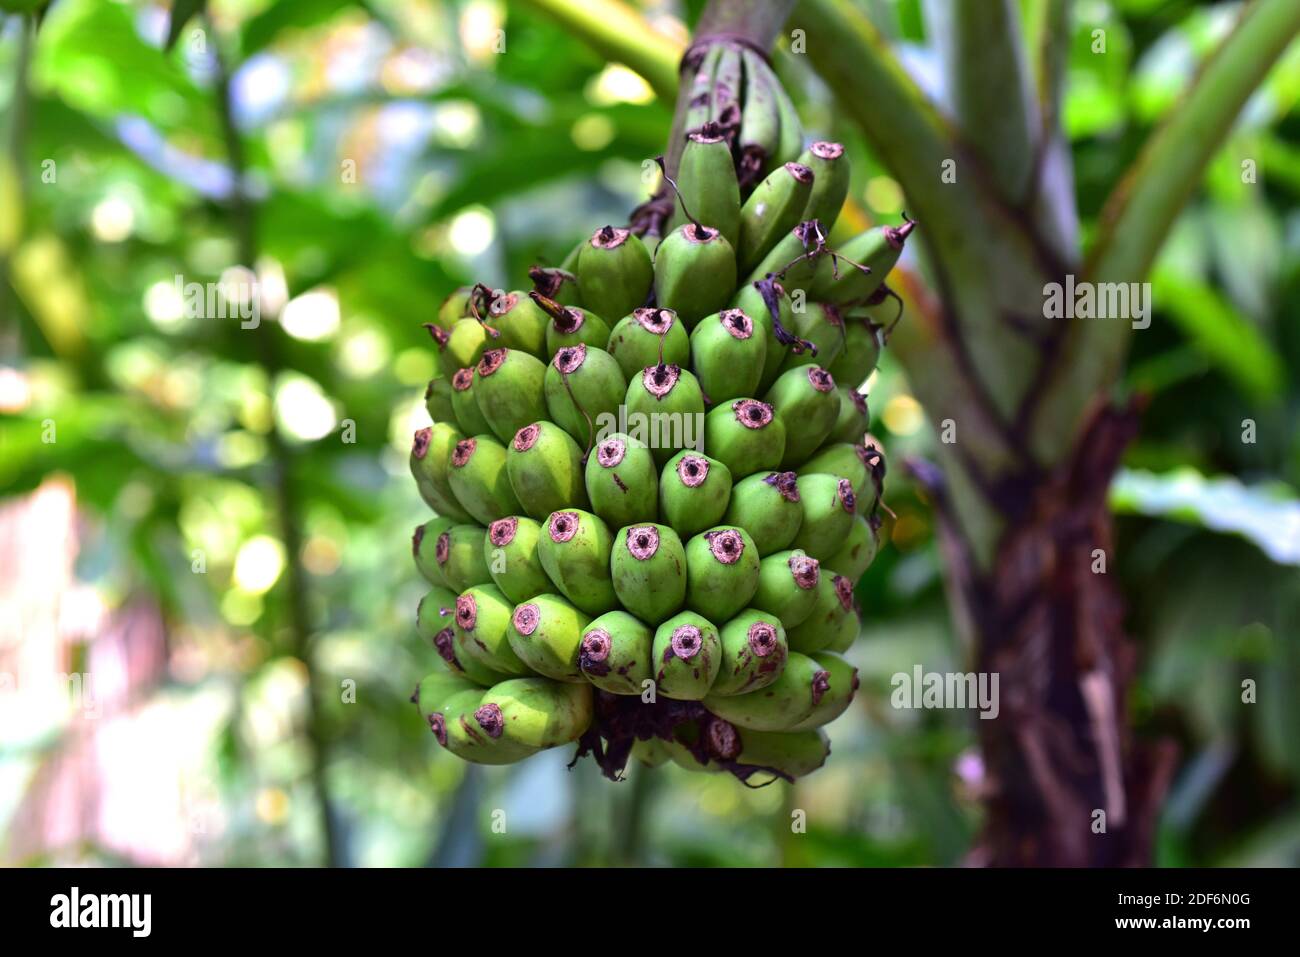 El banano malayo (Musa acuminata) es una hierba perenne nativa del sudeste asiático. Sus frutos (detalle) son comestibles. Foto de stock